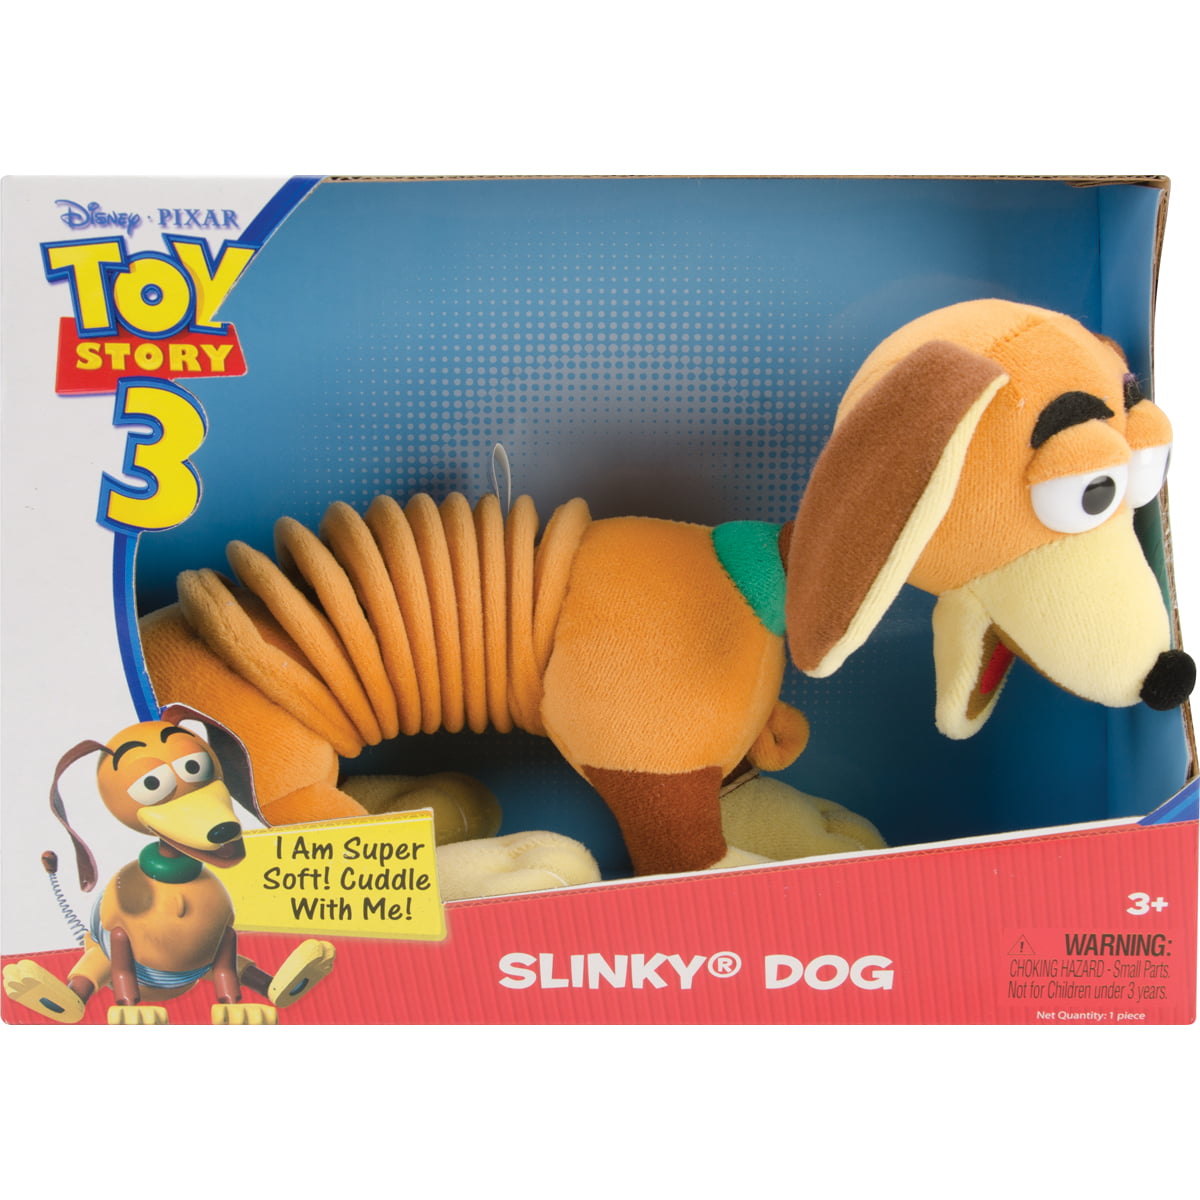 Disney Pixar Toy Story Slinking Dog 3+ 